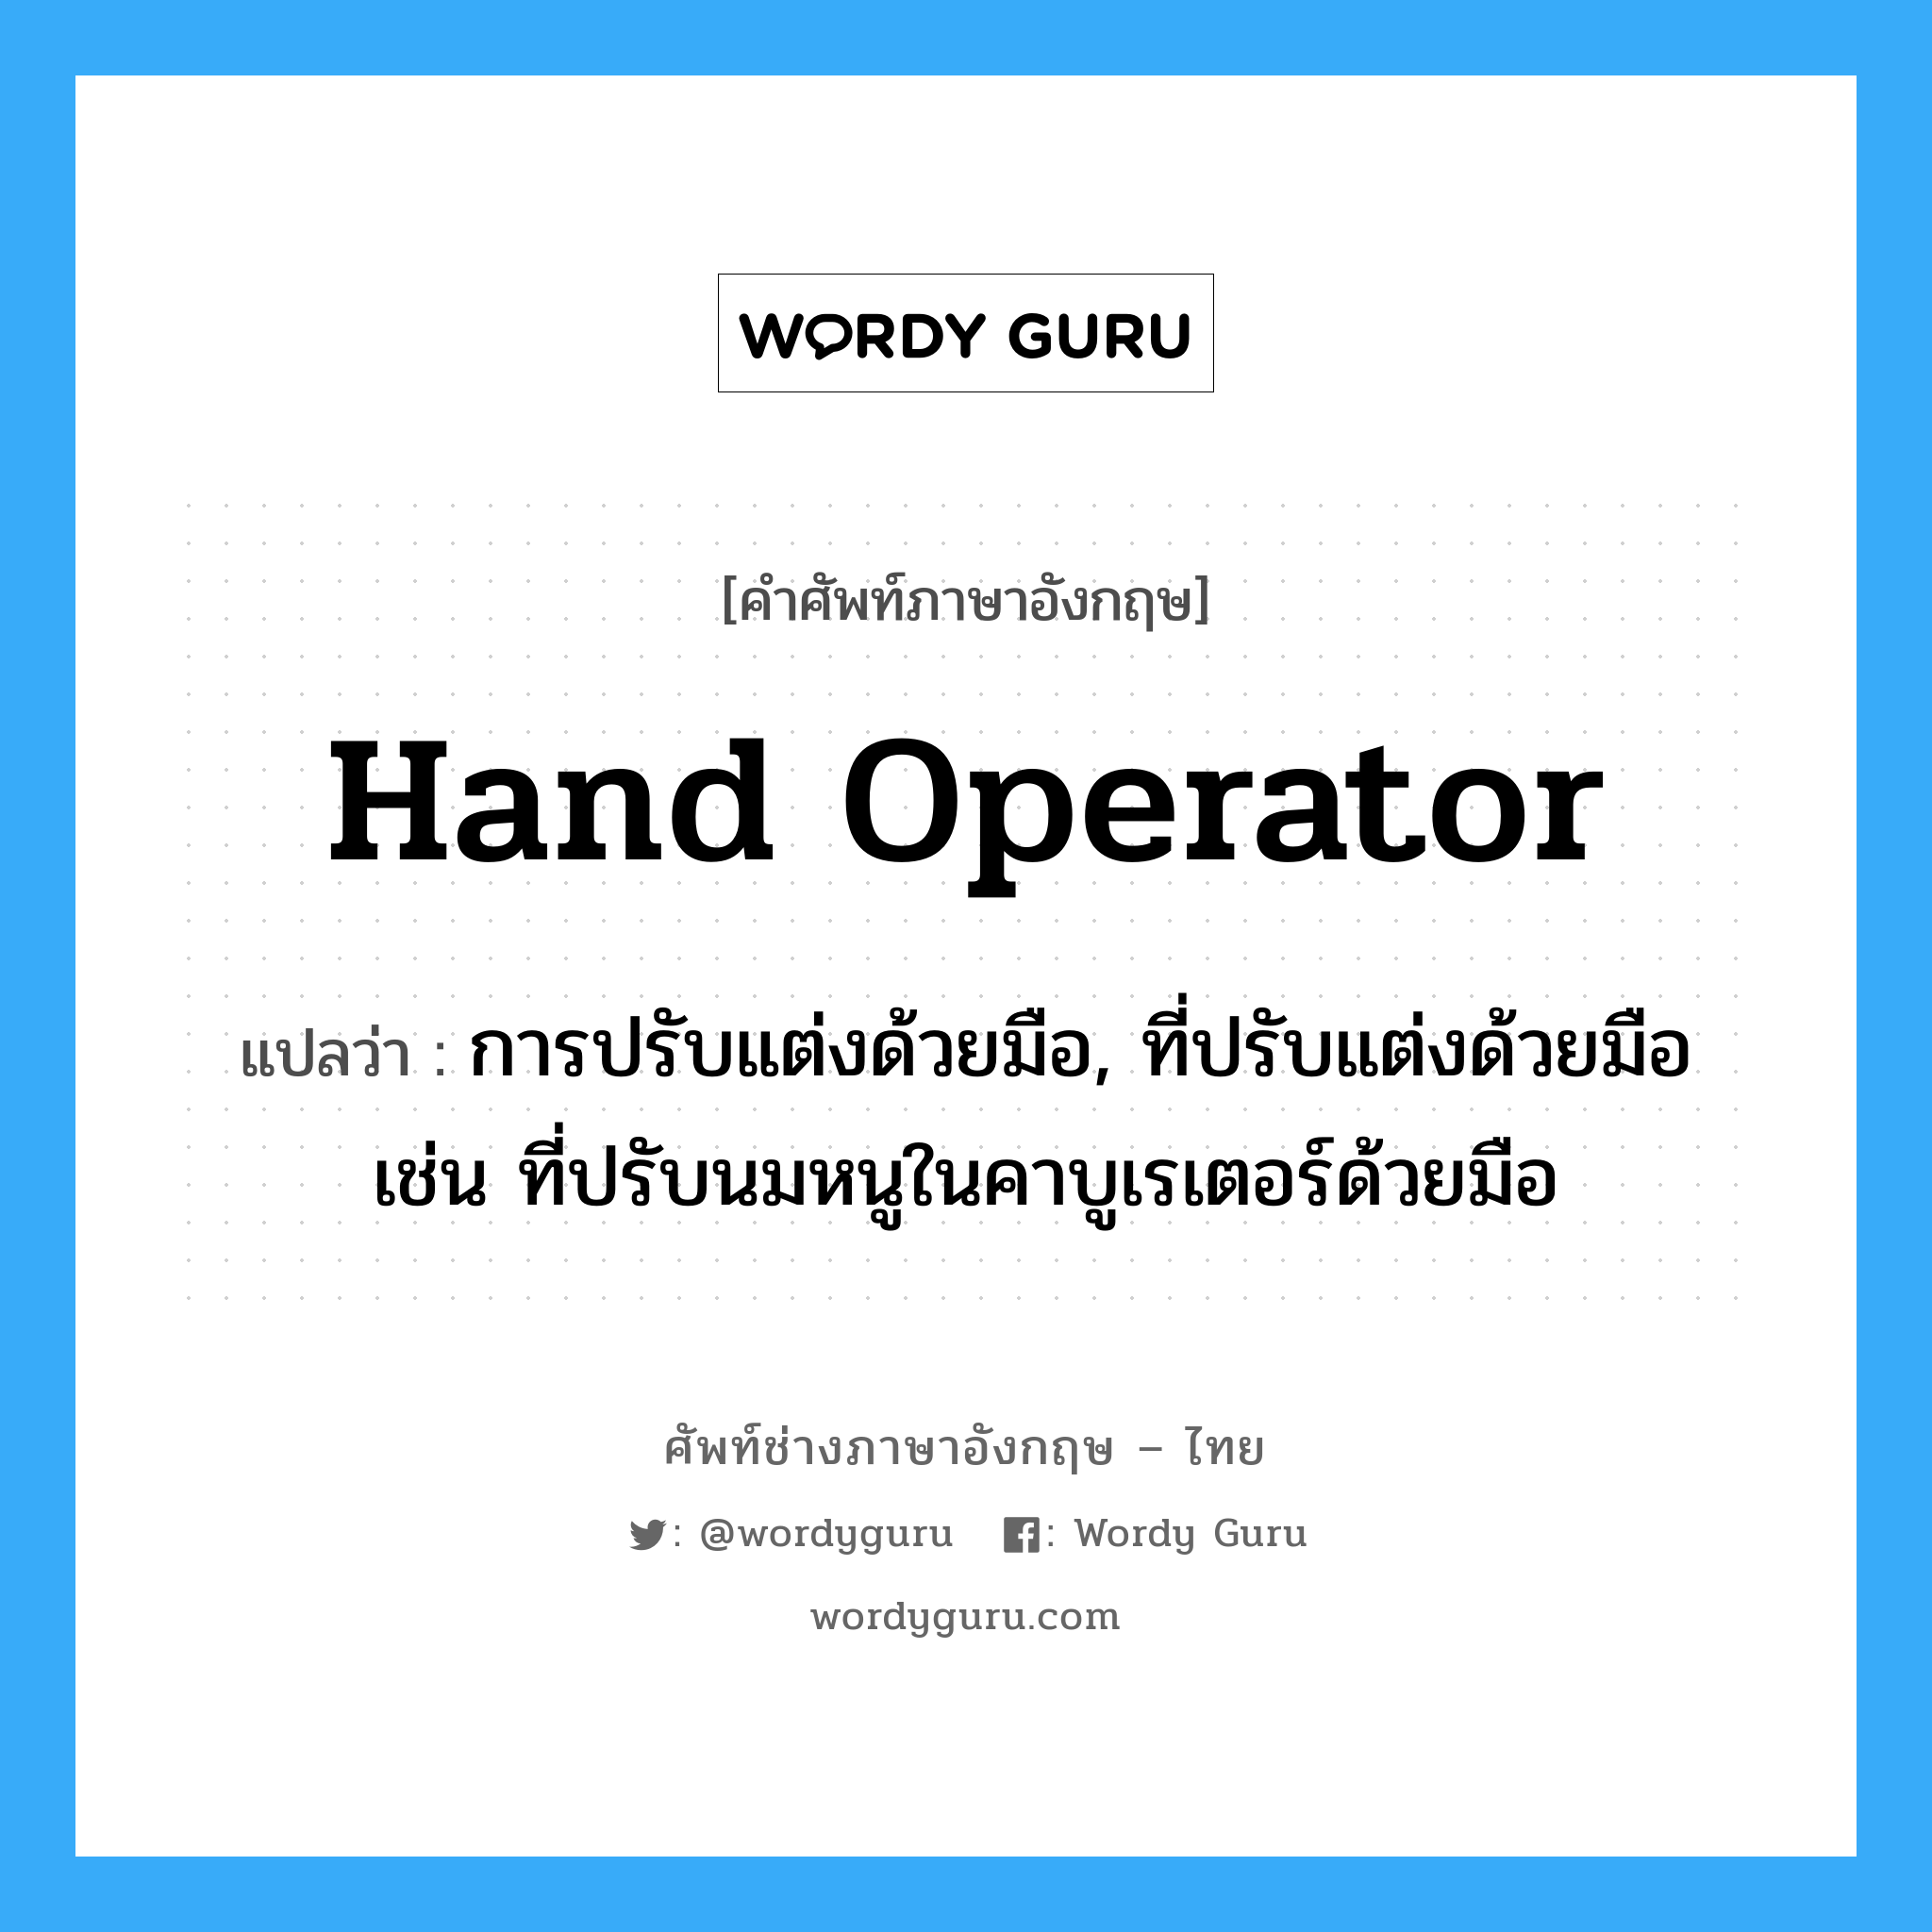 hand operator แปลว่า?, คำศัพท์ช่างภาษาอังกฤษ - ไทย hand operator คำศัพท์ภาษาอังกฤษ hand operator แปลว่า การปรับแต่งด้วยมือ, ที่ปรับแต่งด้วยมือ เช่น ที่ปรับนมหนูในคาบูเรเตอร์ด้วยมือ